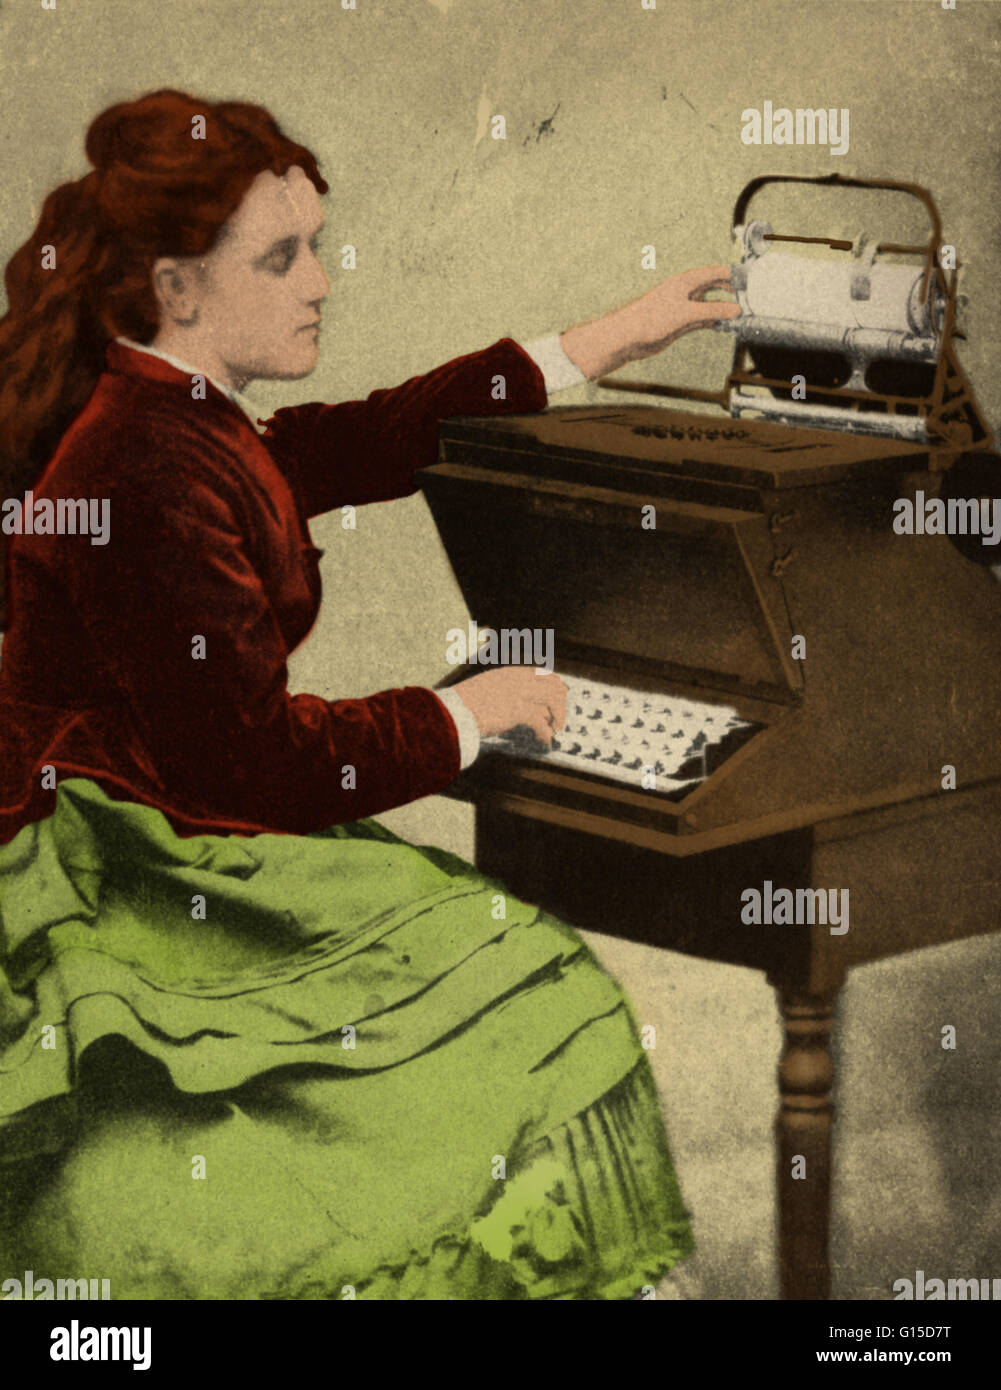 Lillian Sholes, fille de Christopher Sholes écrit sur l'une de ses machines expérimentales. 'La première dactylographe.' 1872. Christopher Latham Sholes (1819-1890) était un inventeur américain souvent désigné comme le père de la machine à écrire. Machines à écrire a bee Banque D'Images